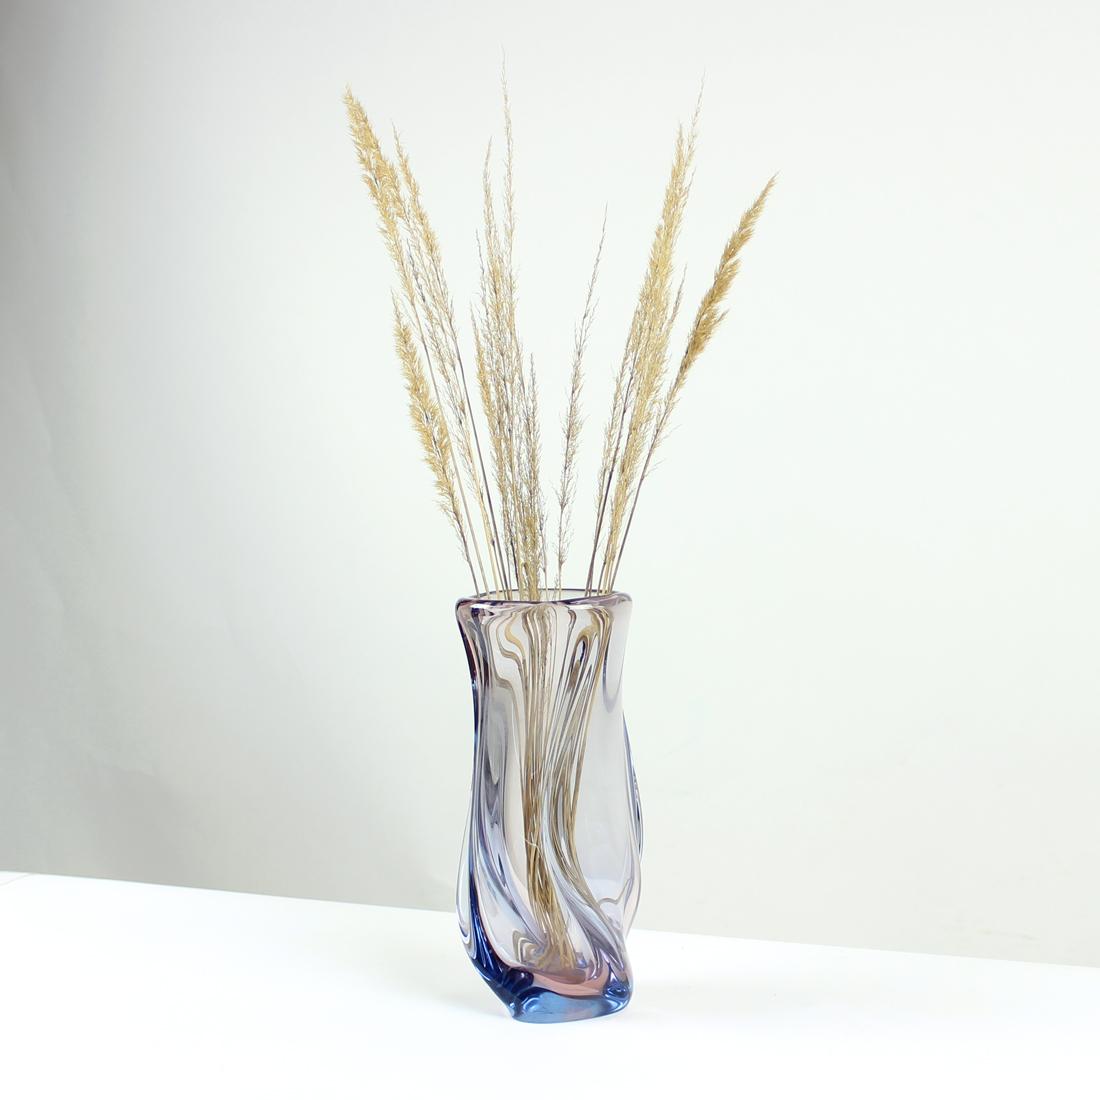 Grand et lourd vase en verre d'art de Murano. Produit en Tchécoslovaquie dans les années 1960 par Josef Hospodka et Skrdlovice Glass Factory. Le vase est en verre transparent avec une légère nuance bleue. La forme est très élégante car elle est